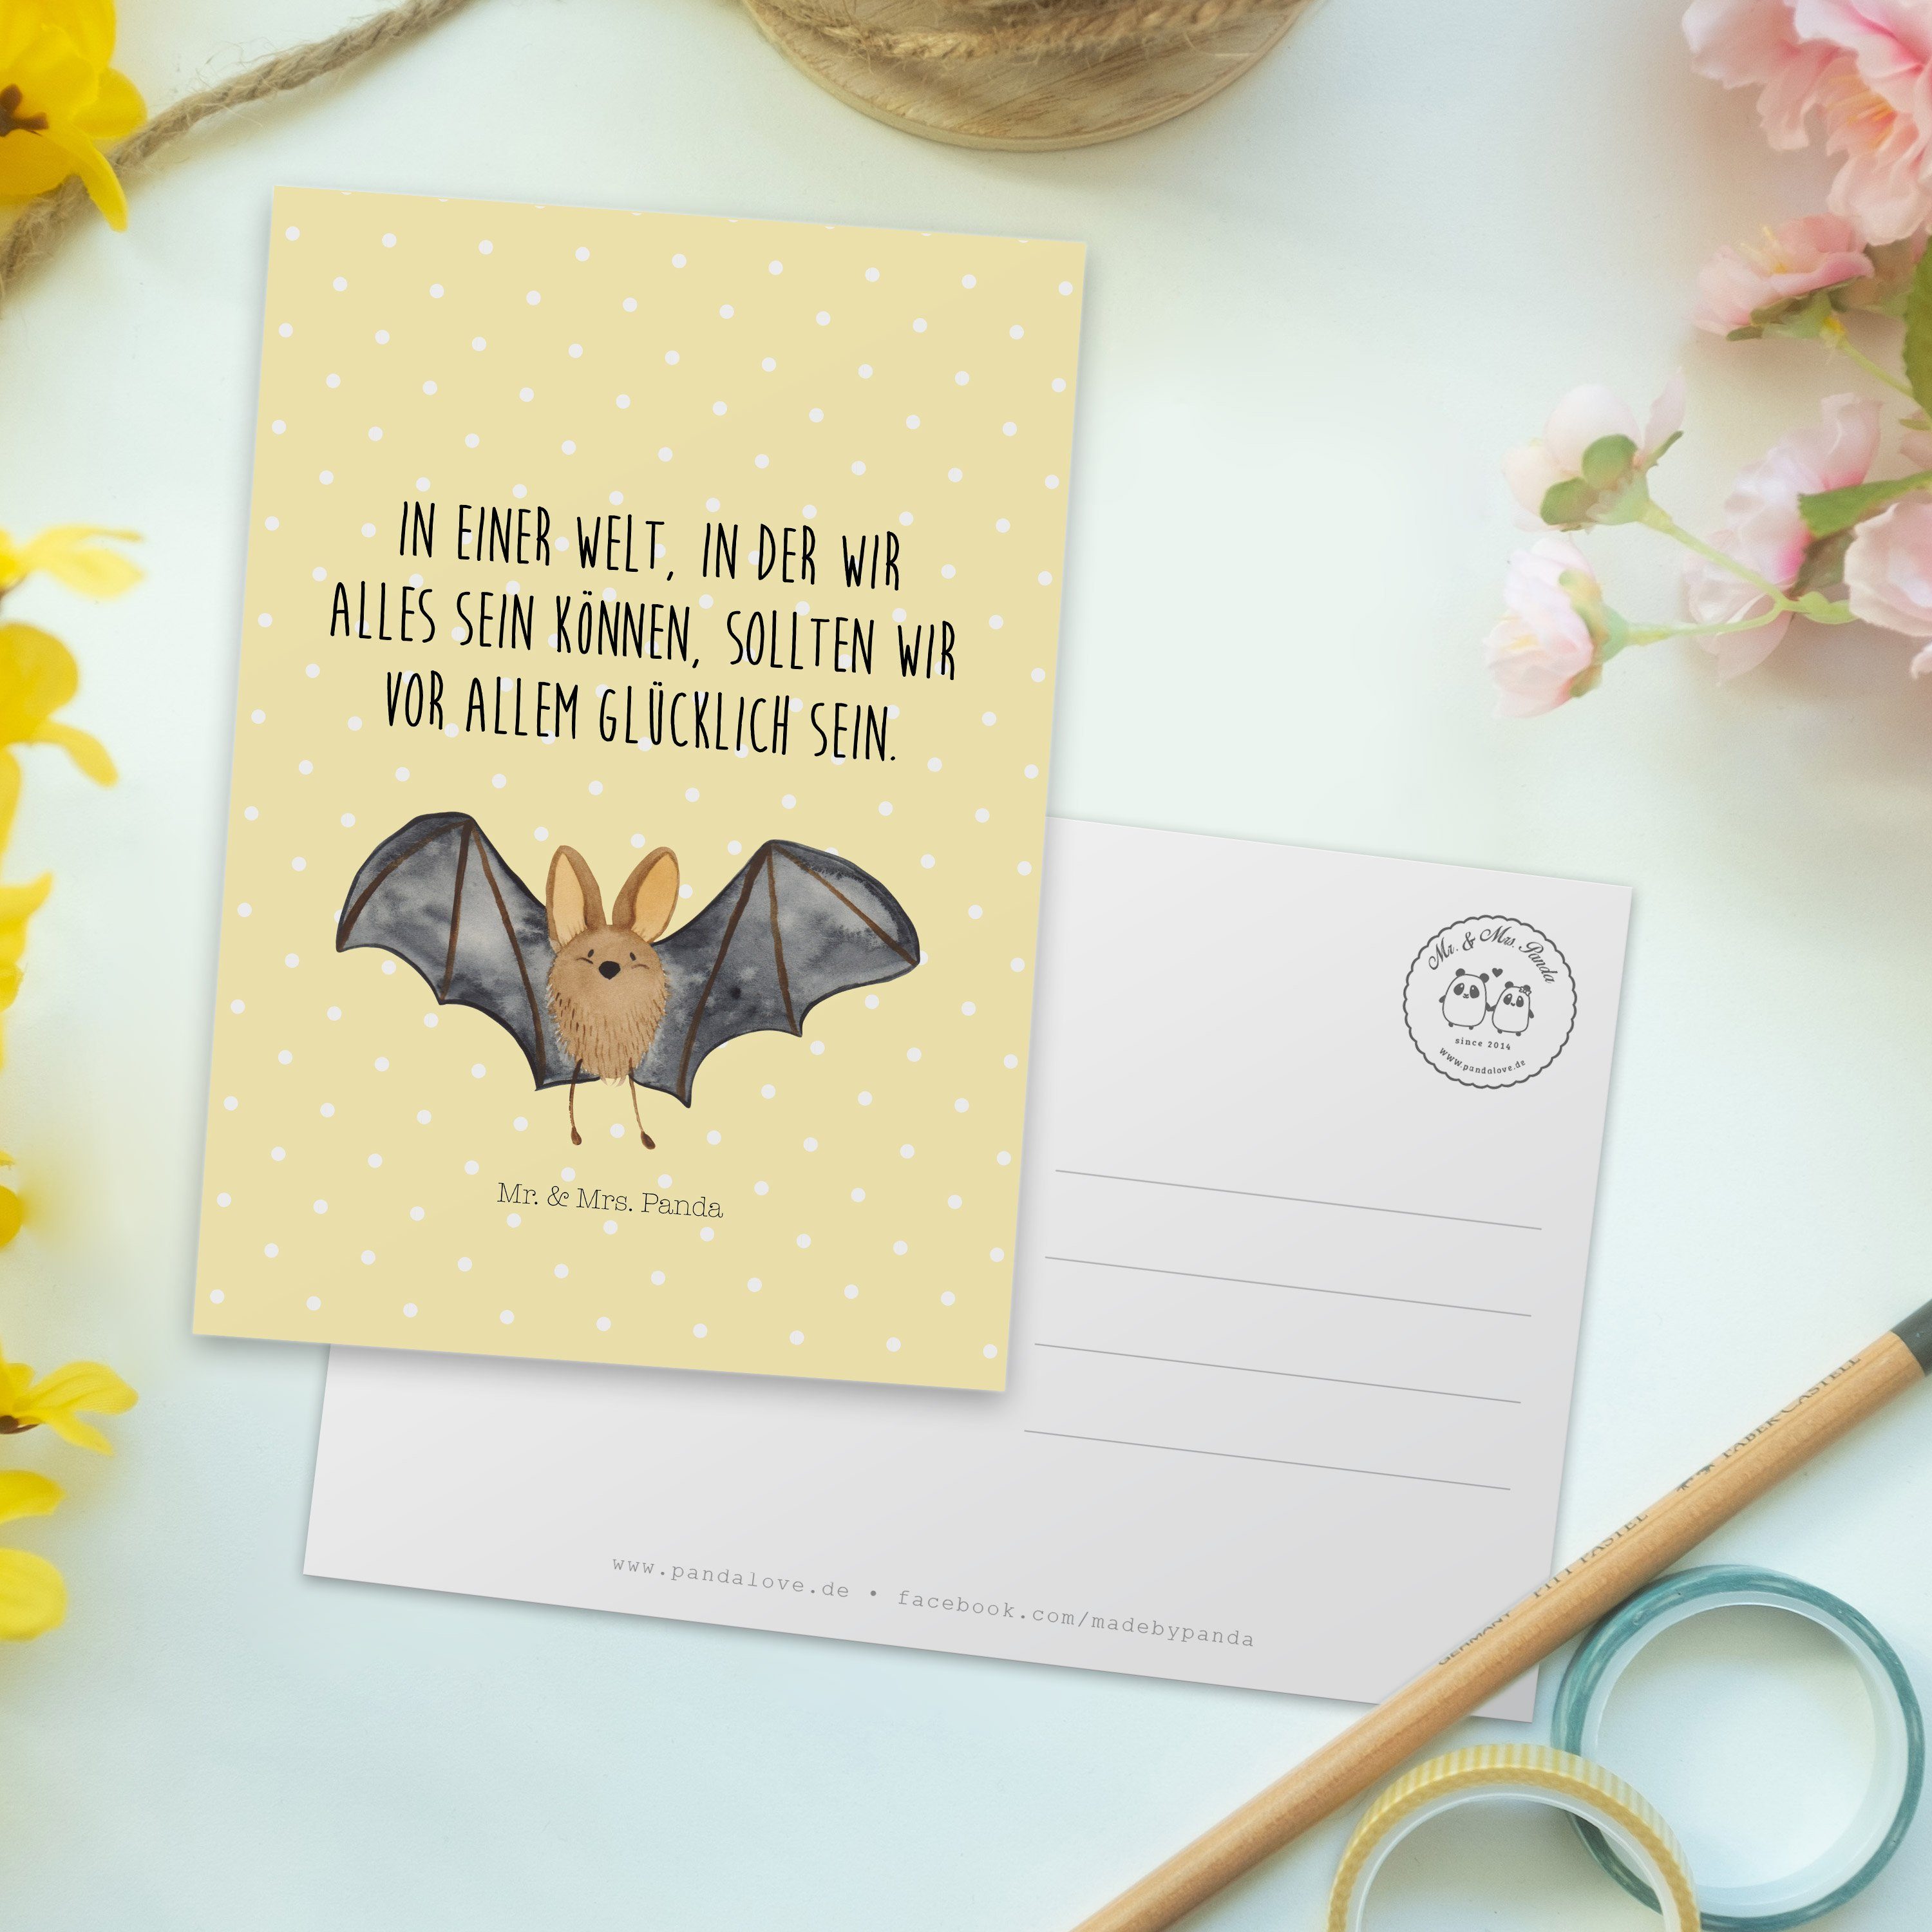 Mr. & Fledermaus Pastell Einladu - Gelb Einladungskarte, Geschenk, Panda Mrs. Flügel - Postkarte